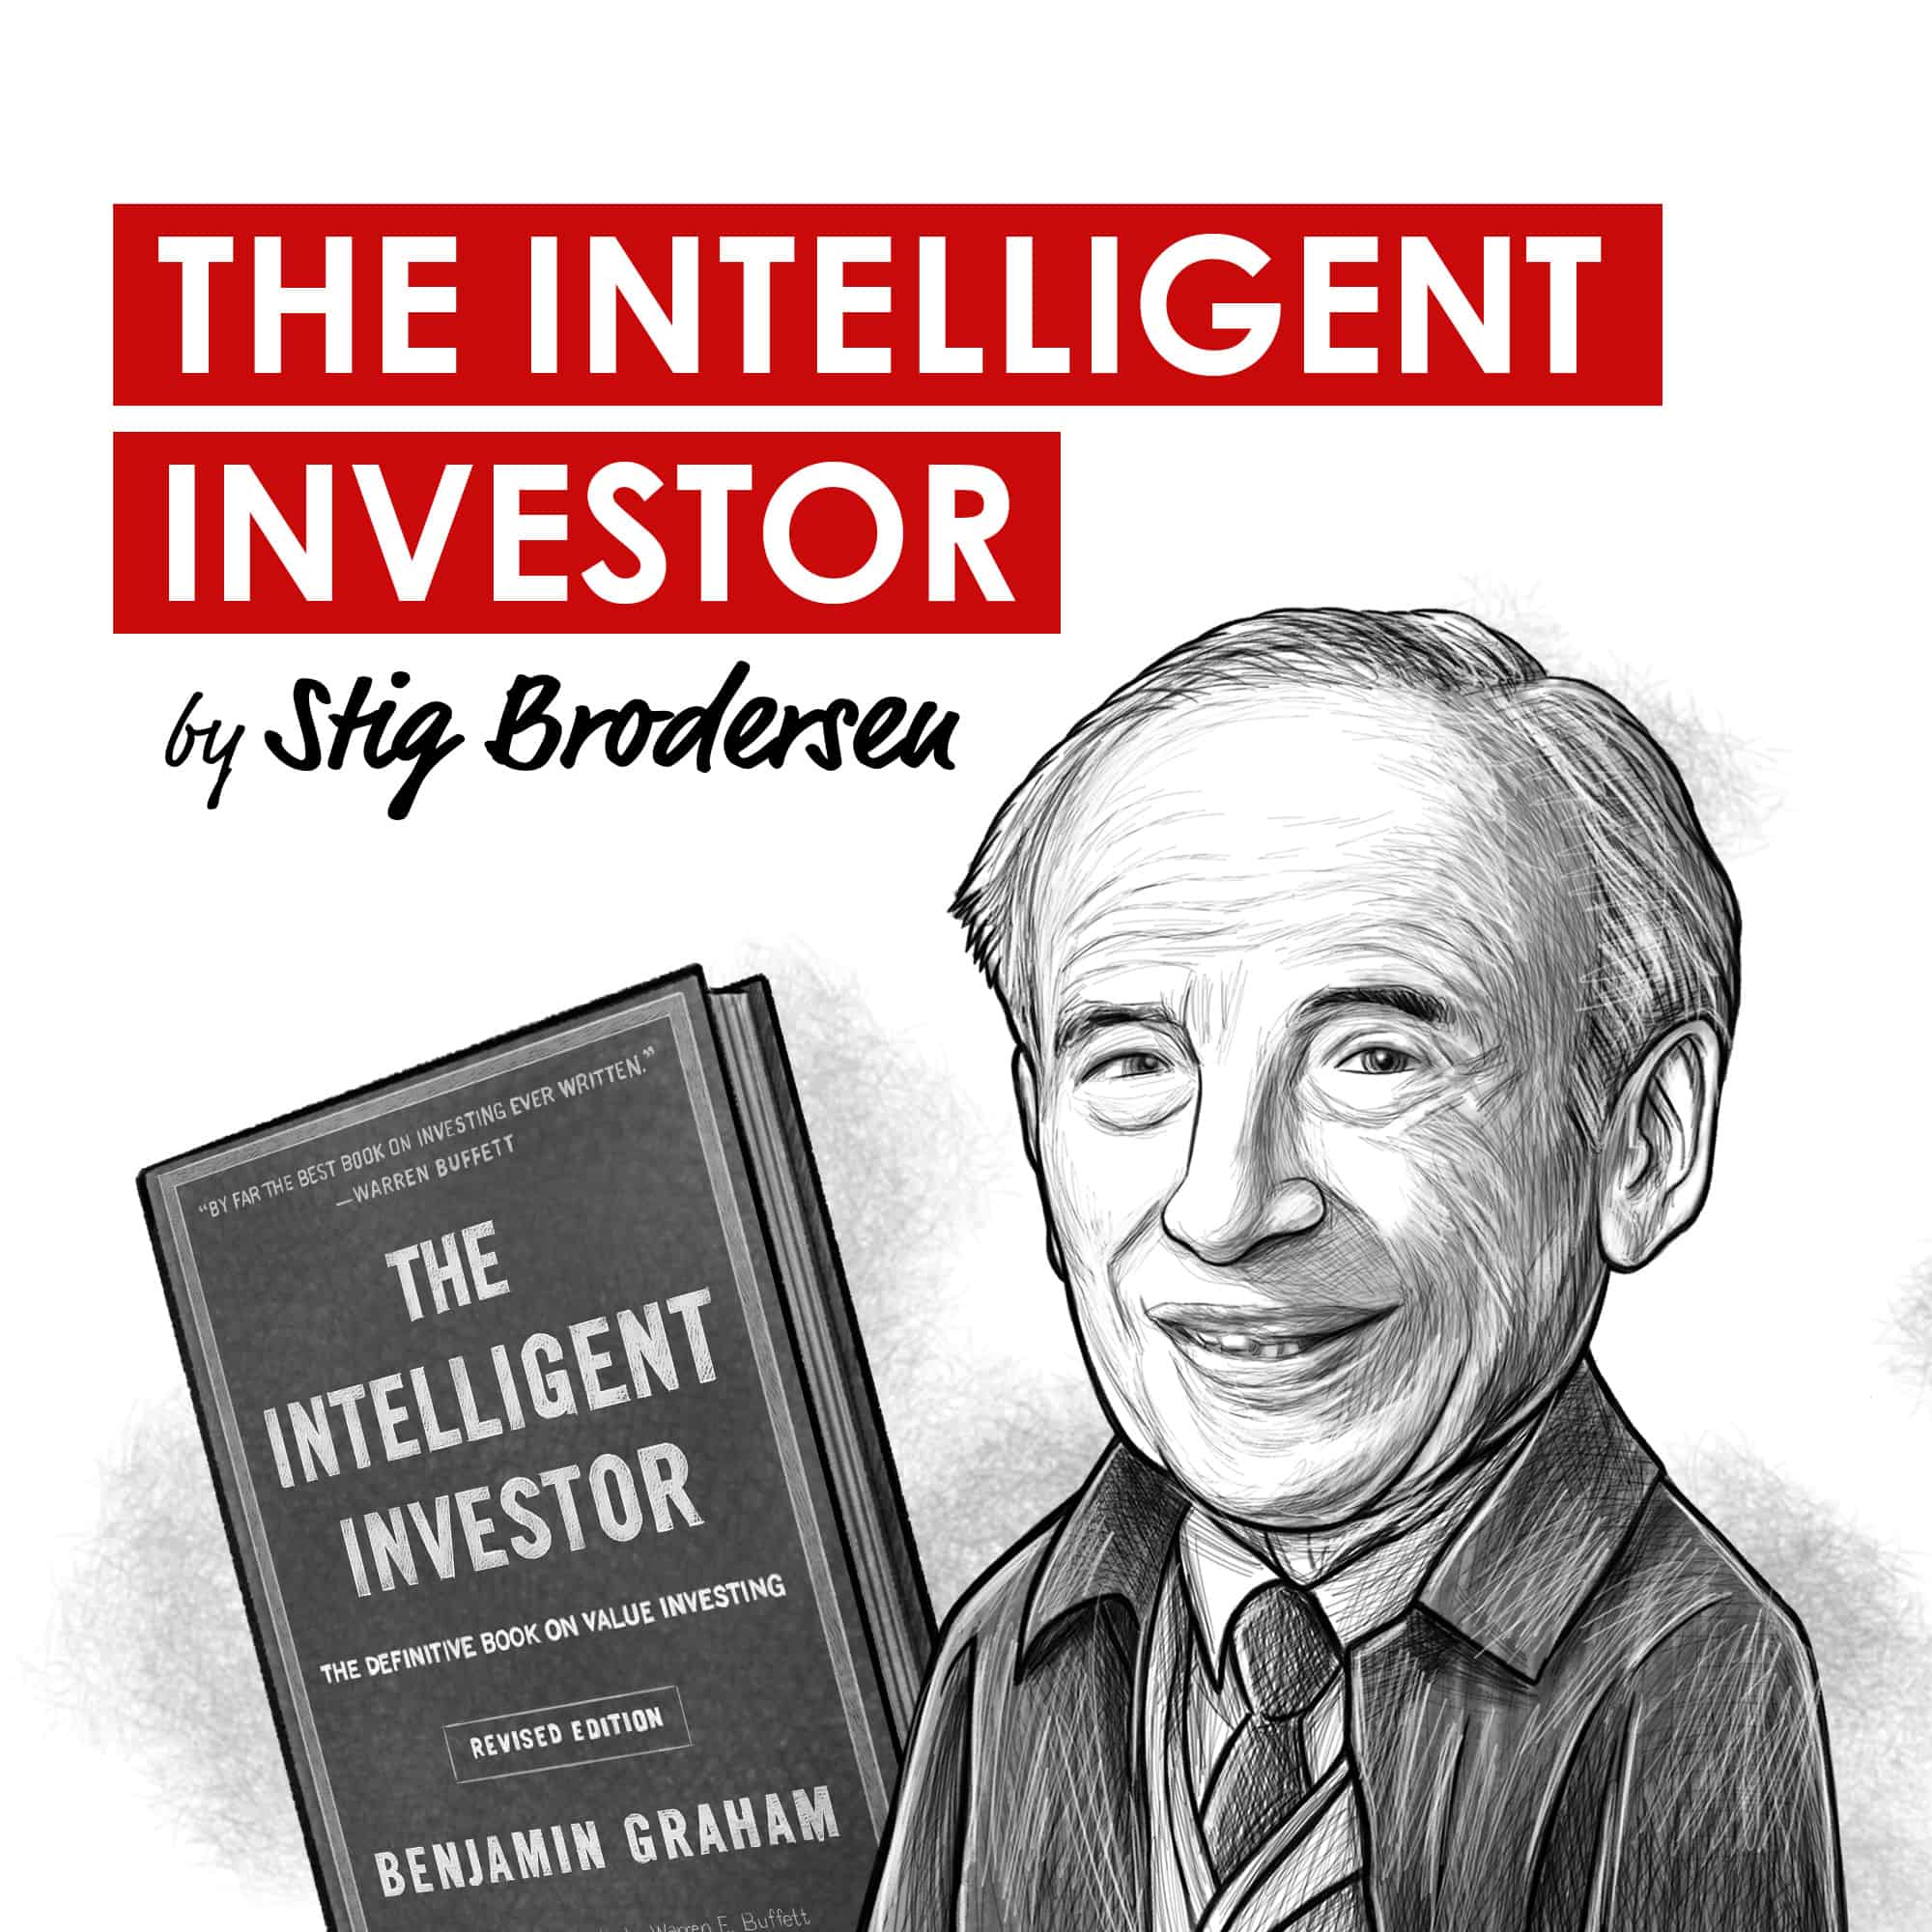 Stig Brodersen - The Intelligent Investor Video Course